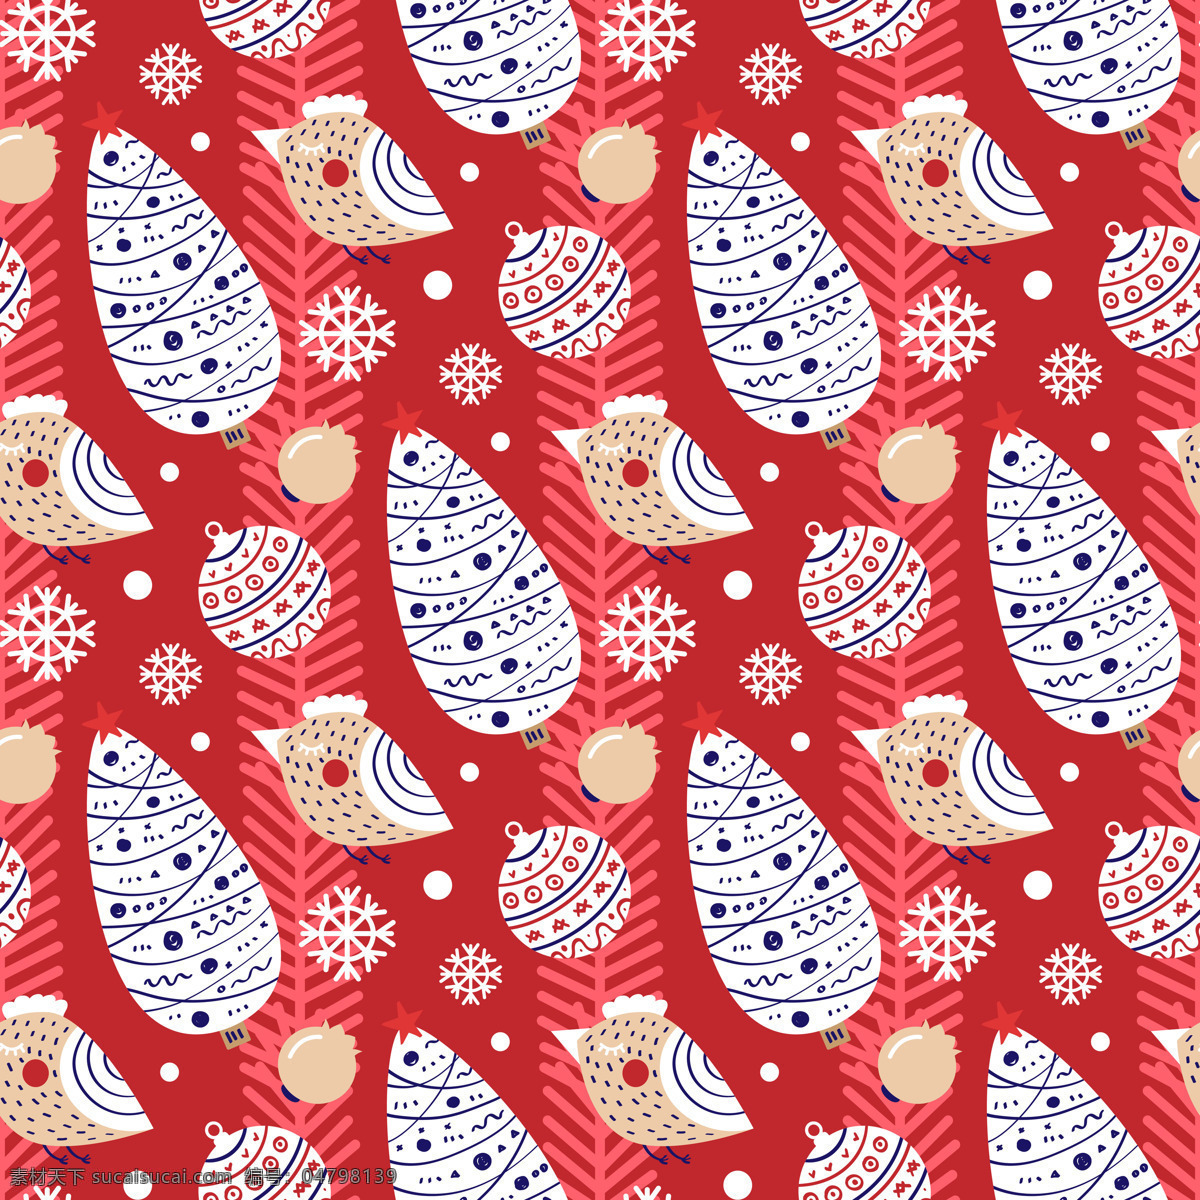 红色 圣诞节 小鸟 装饰 背景 动物 免扣素材 圣诞树 透明素材 雪花 圆点 装饰图片